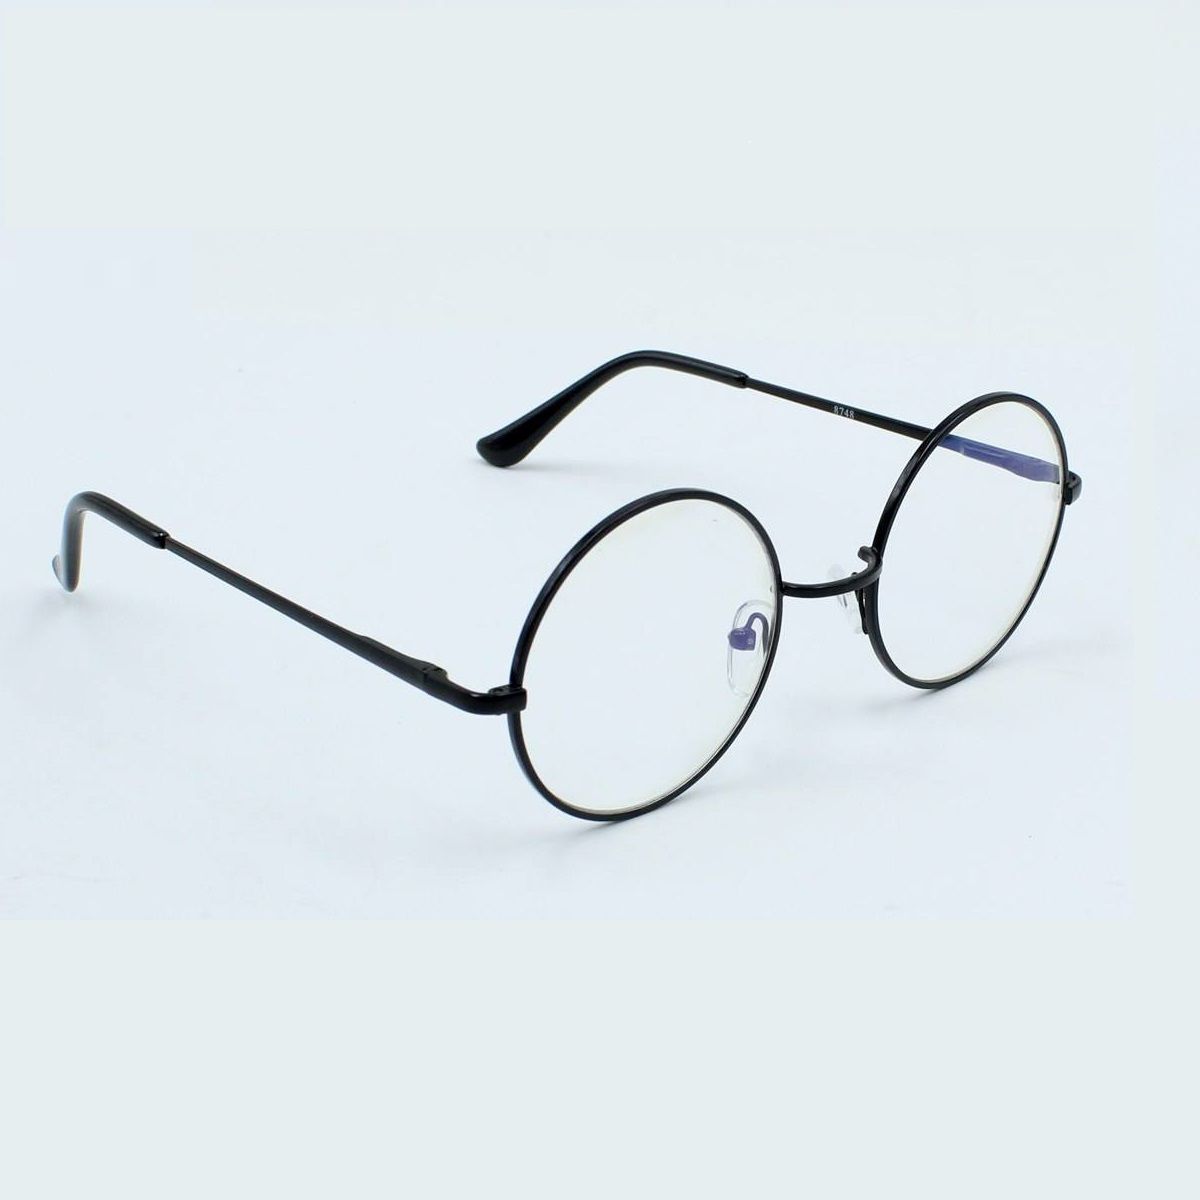 فریم عینک طبی مدل bw-100 -  - 5